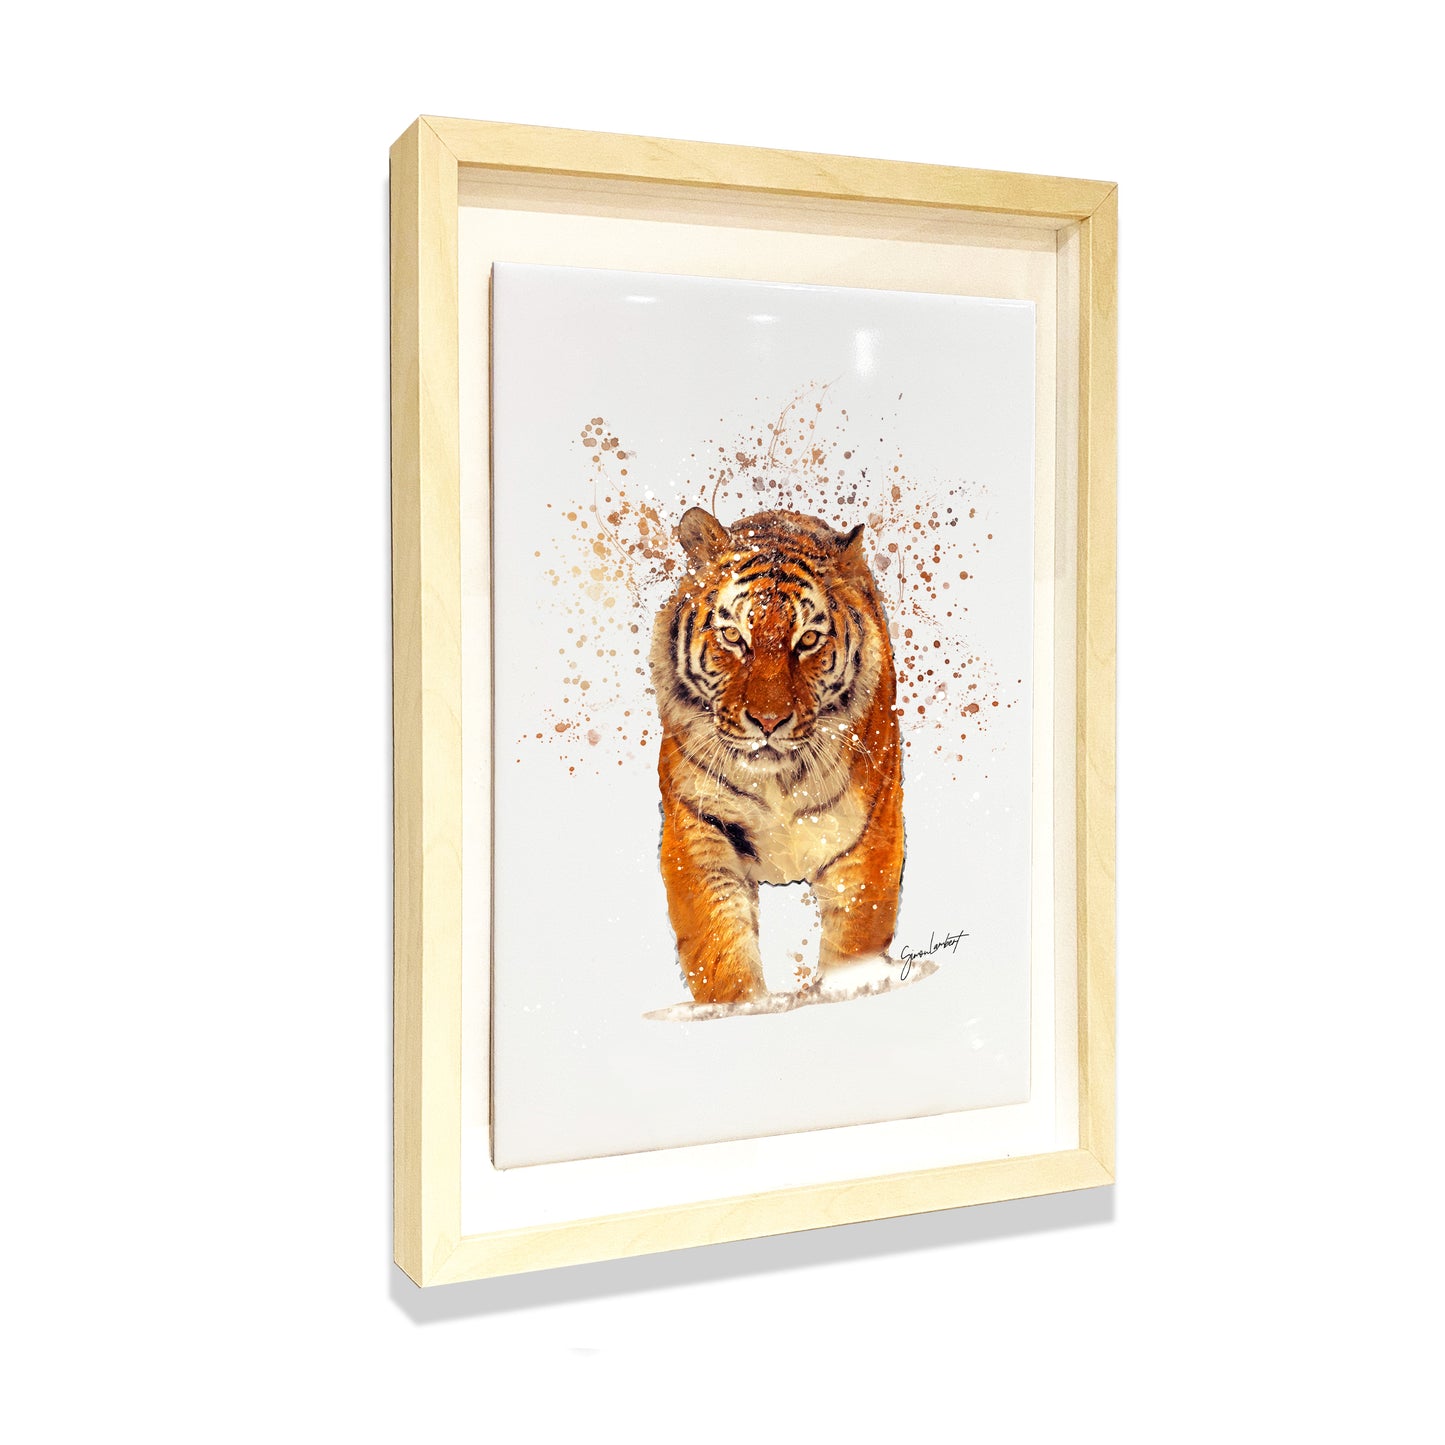 Tiger Portrait Brush Splatter Style Artwork - Framed CERAMIC TILE Art